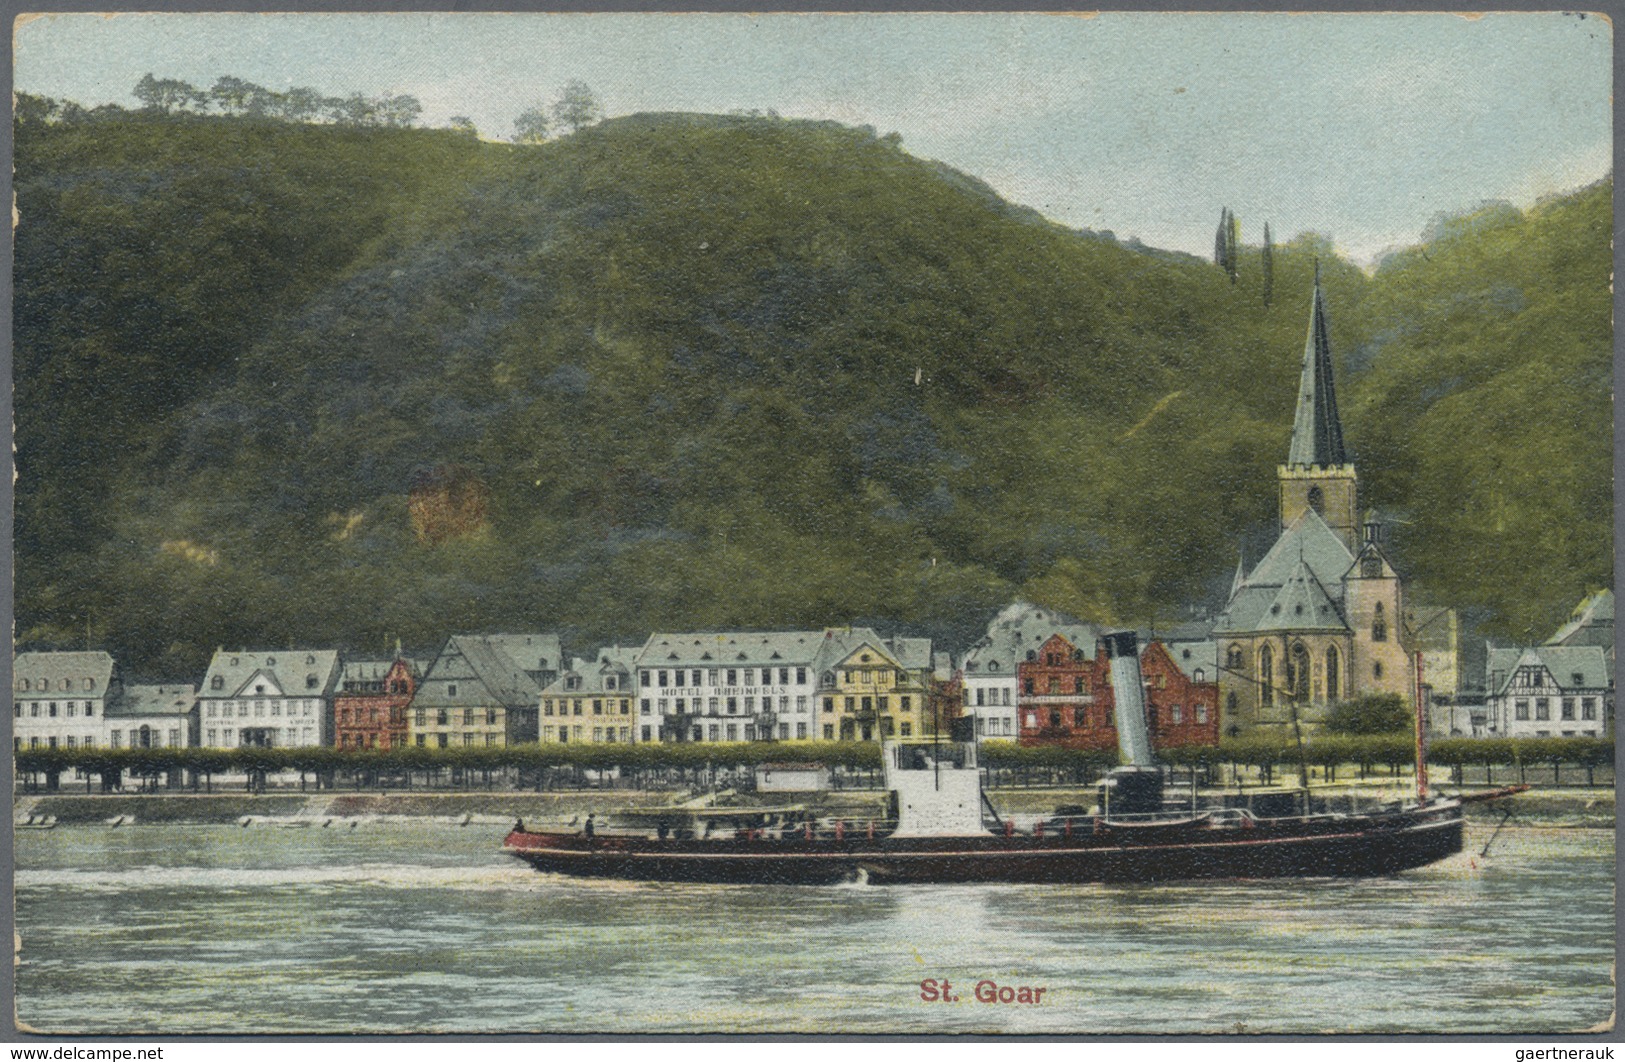 Ansichtskarten: Deutschland: 1900/1945, Sammlung von ca. 640 Karten in 2 alten Postkarten-Alben mit